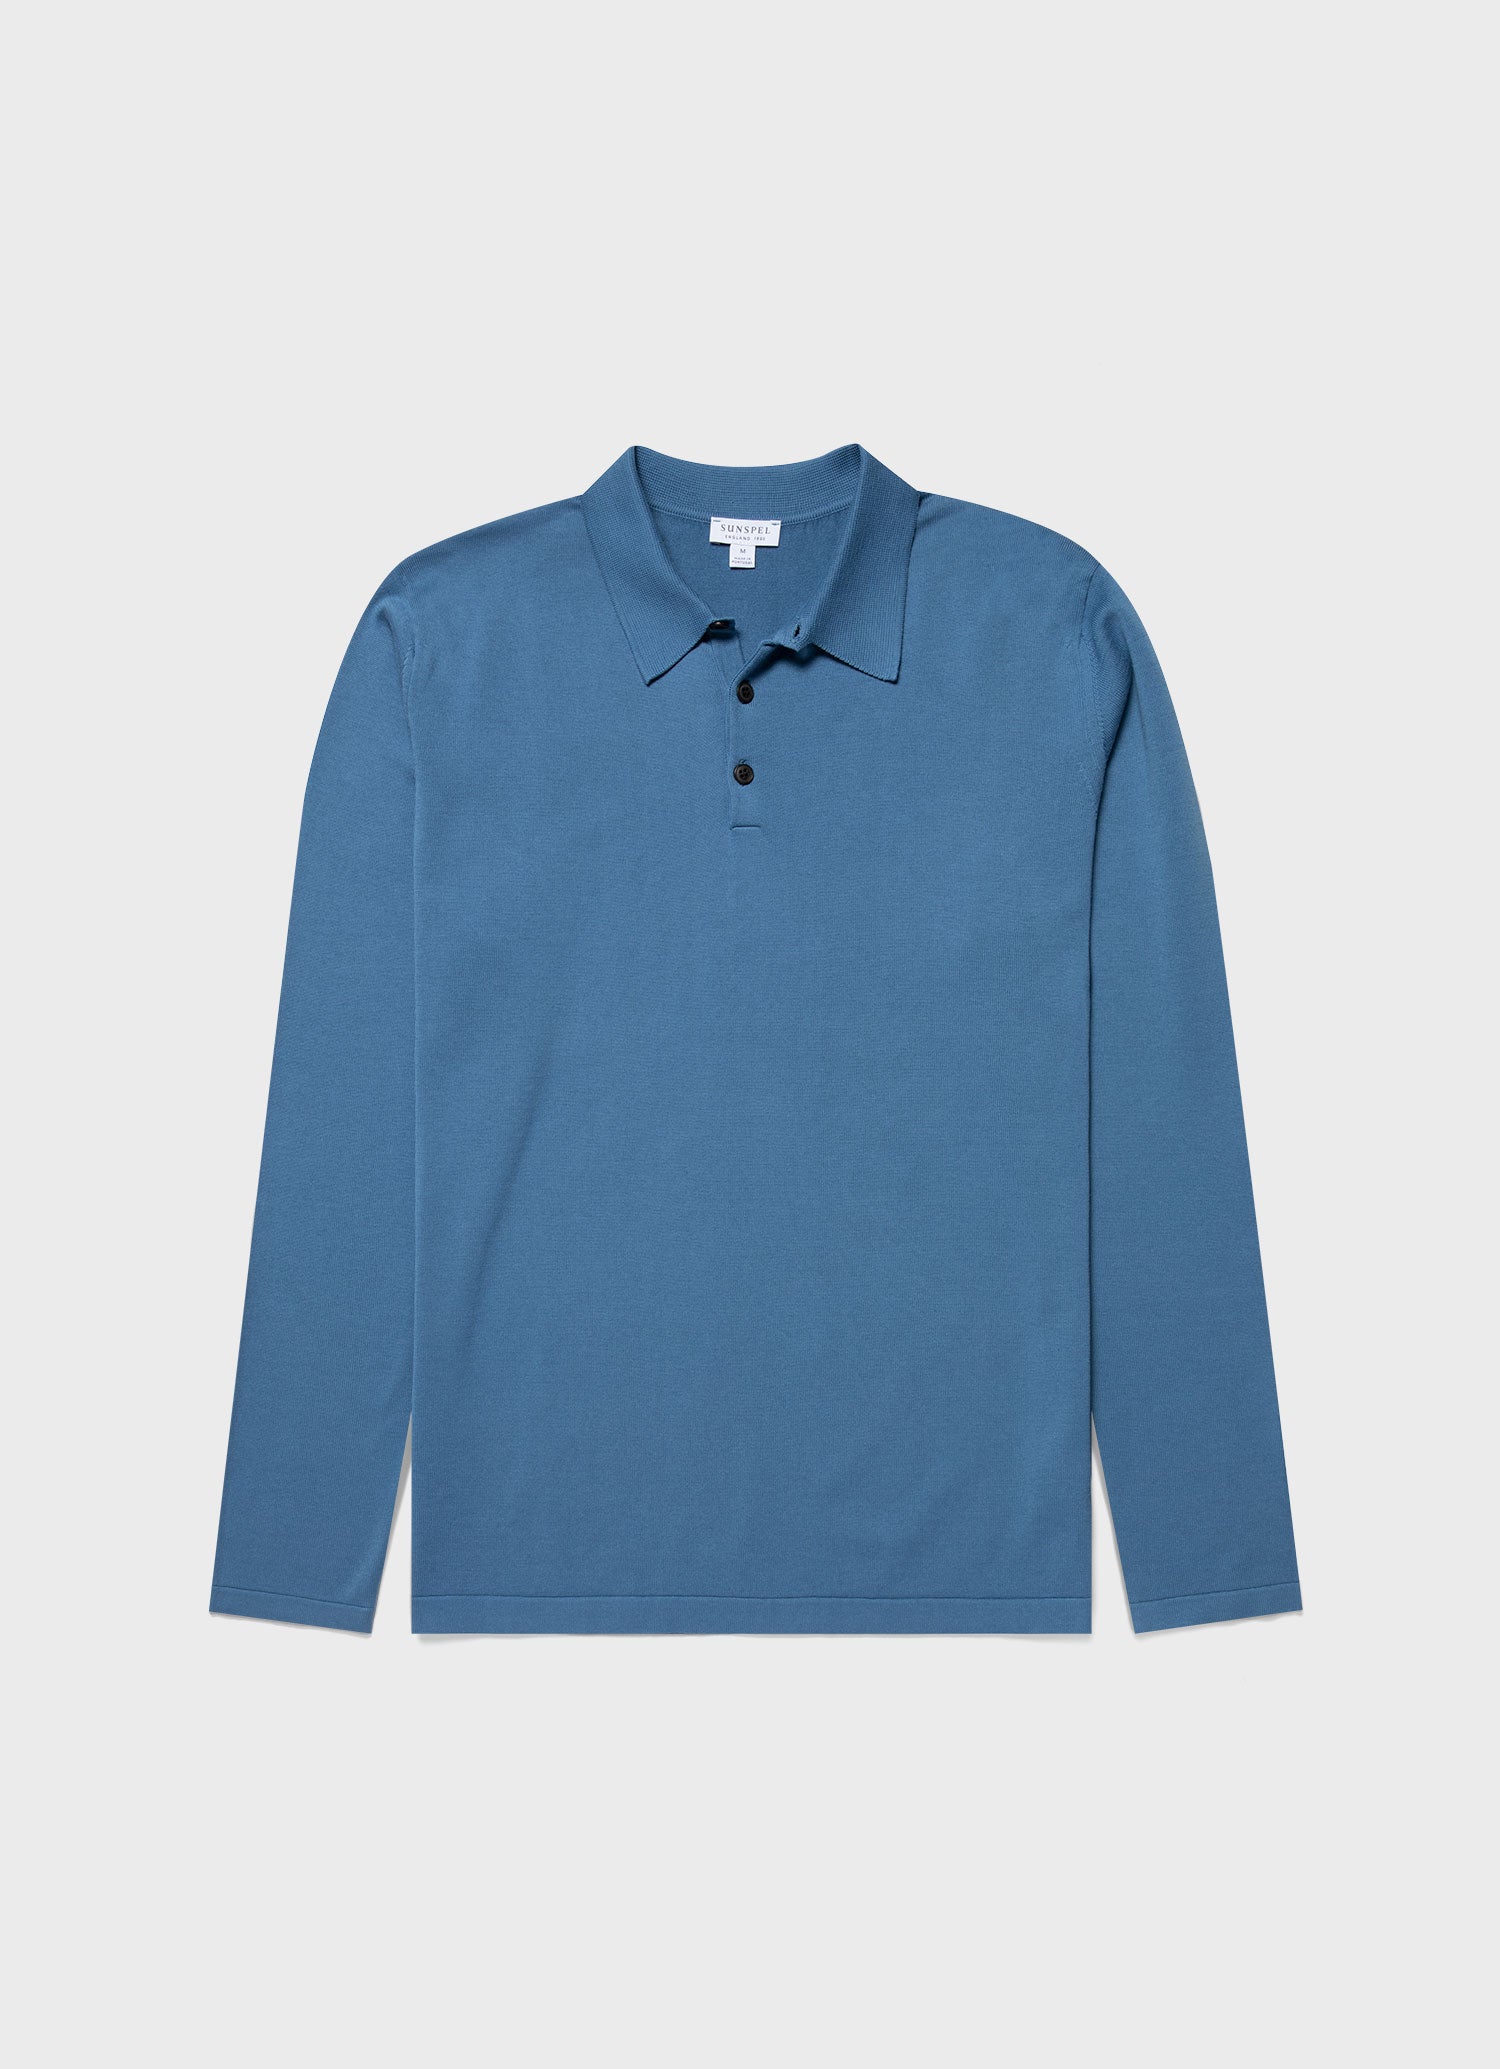 Men's Sea Island Cotton Long Sleeve Polo Shirt in